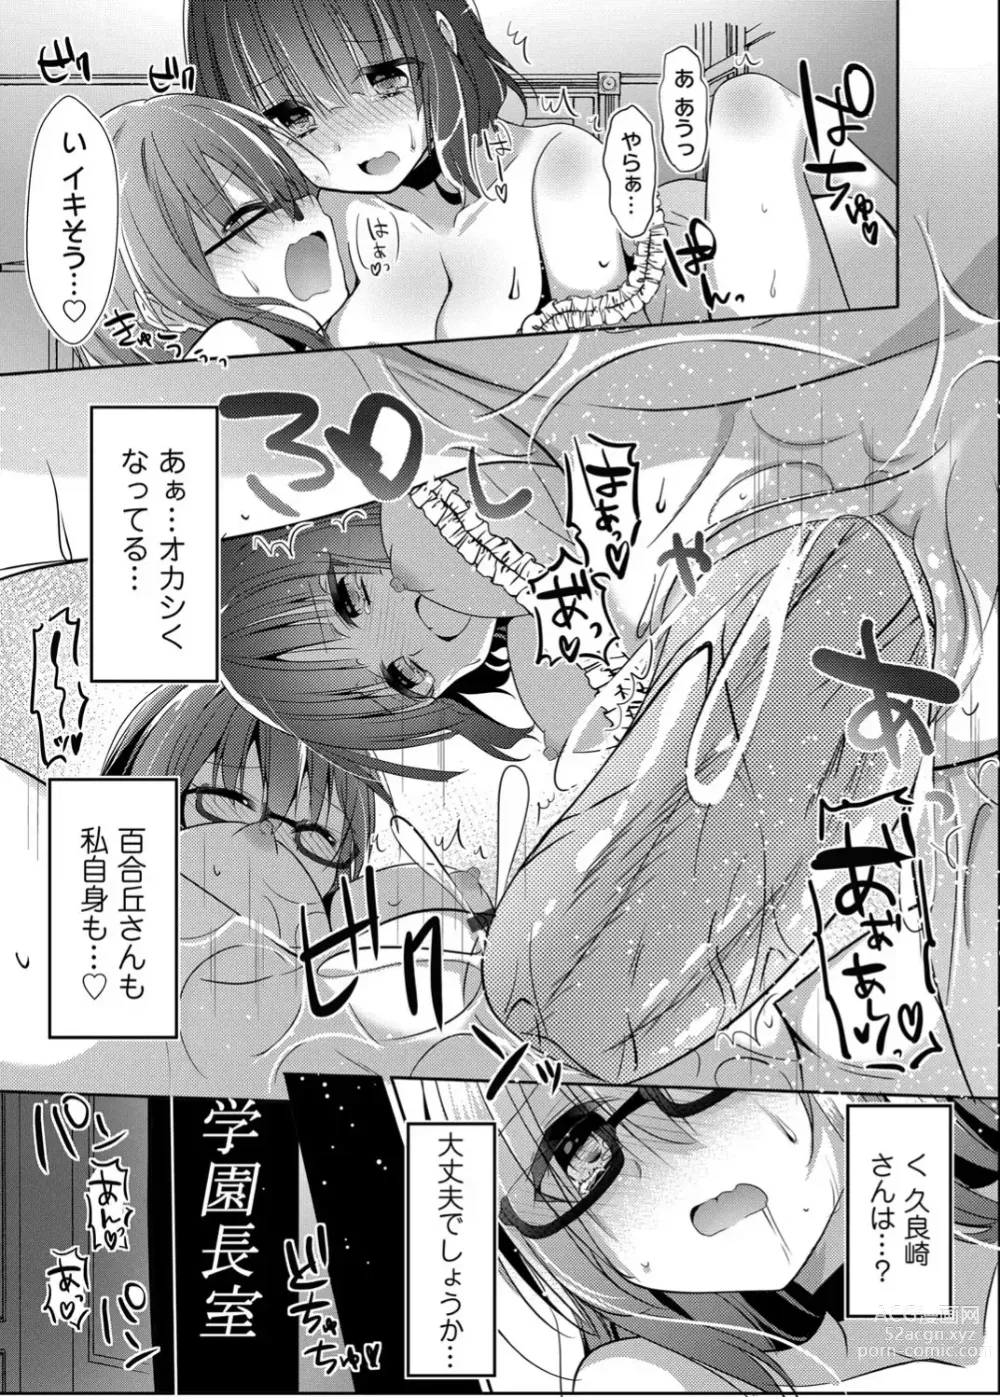 Page 56 of doujinshi Botsuraku Lady no Hakoniwa Showtime